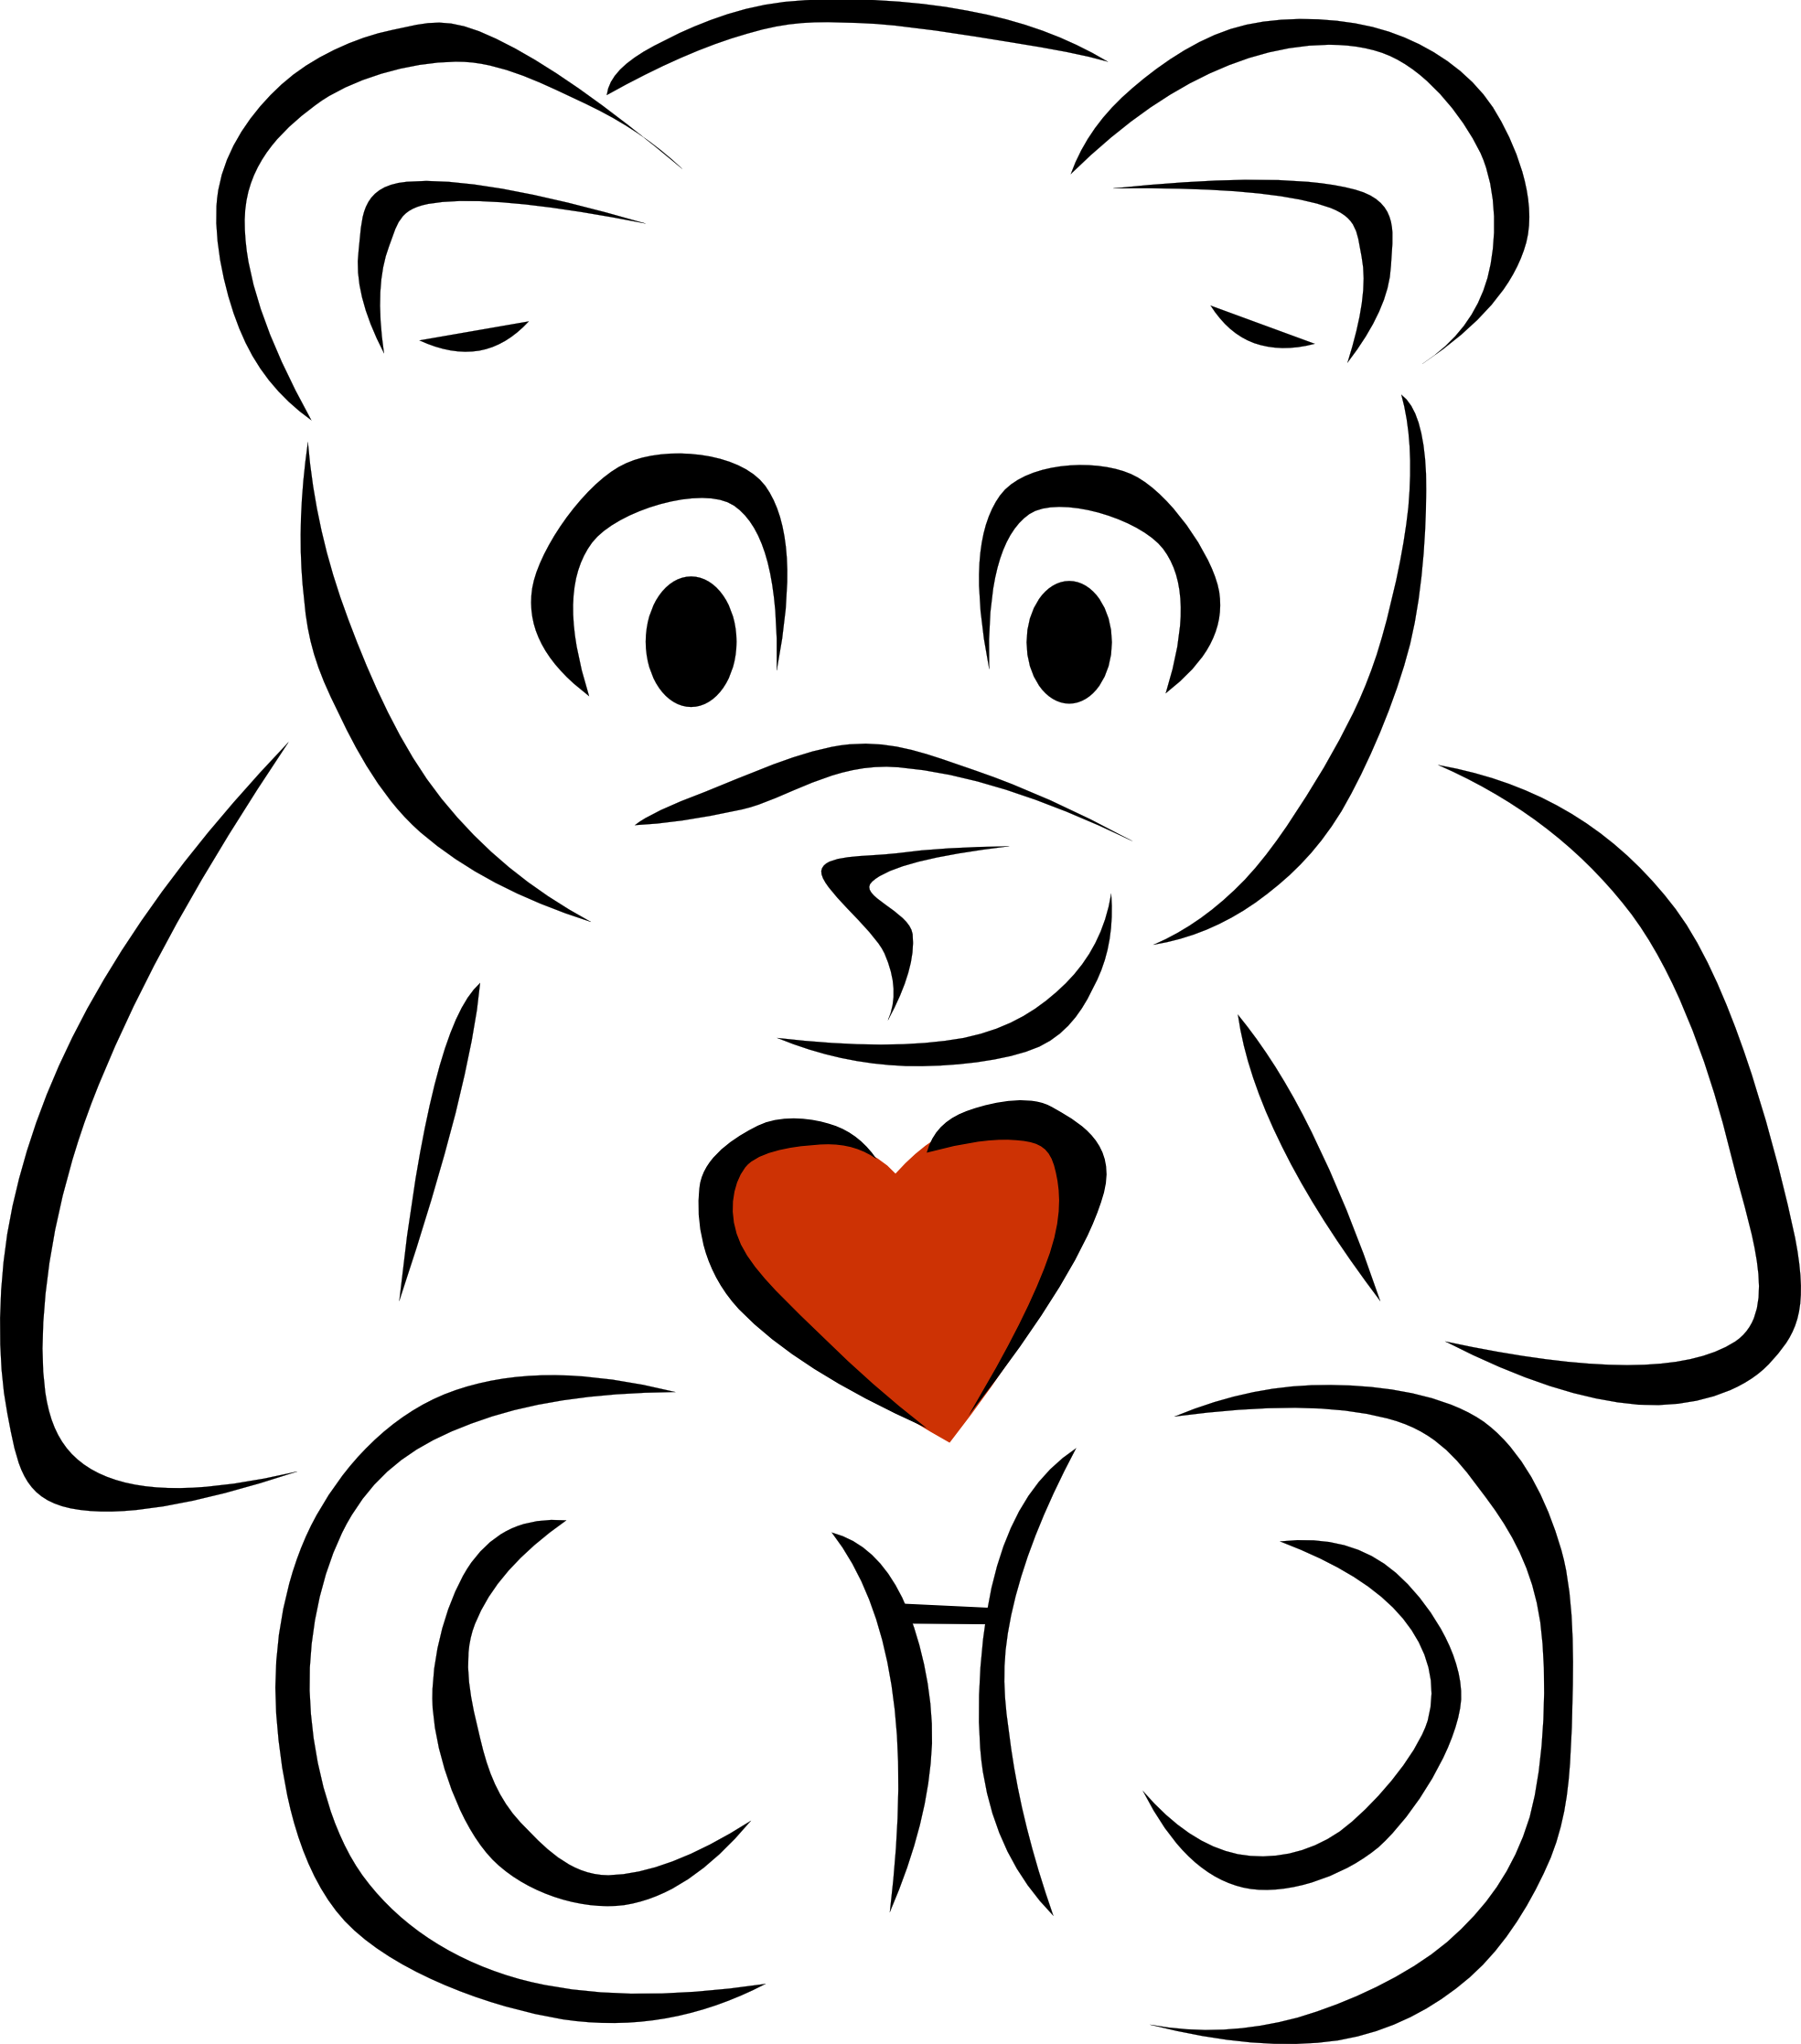 1271715178 Clip Art Bear Heart Black White Line Art Letters 